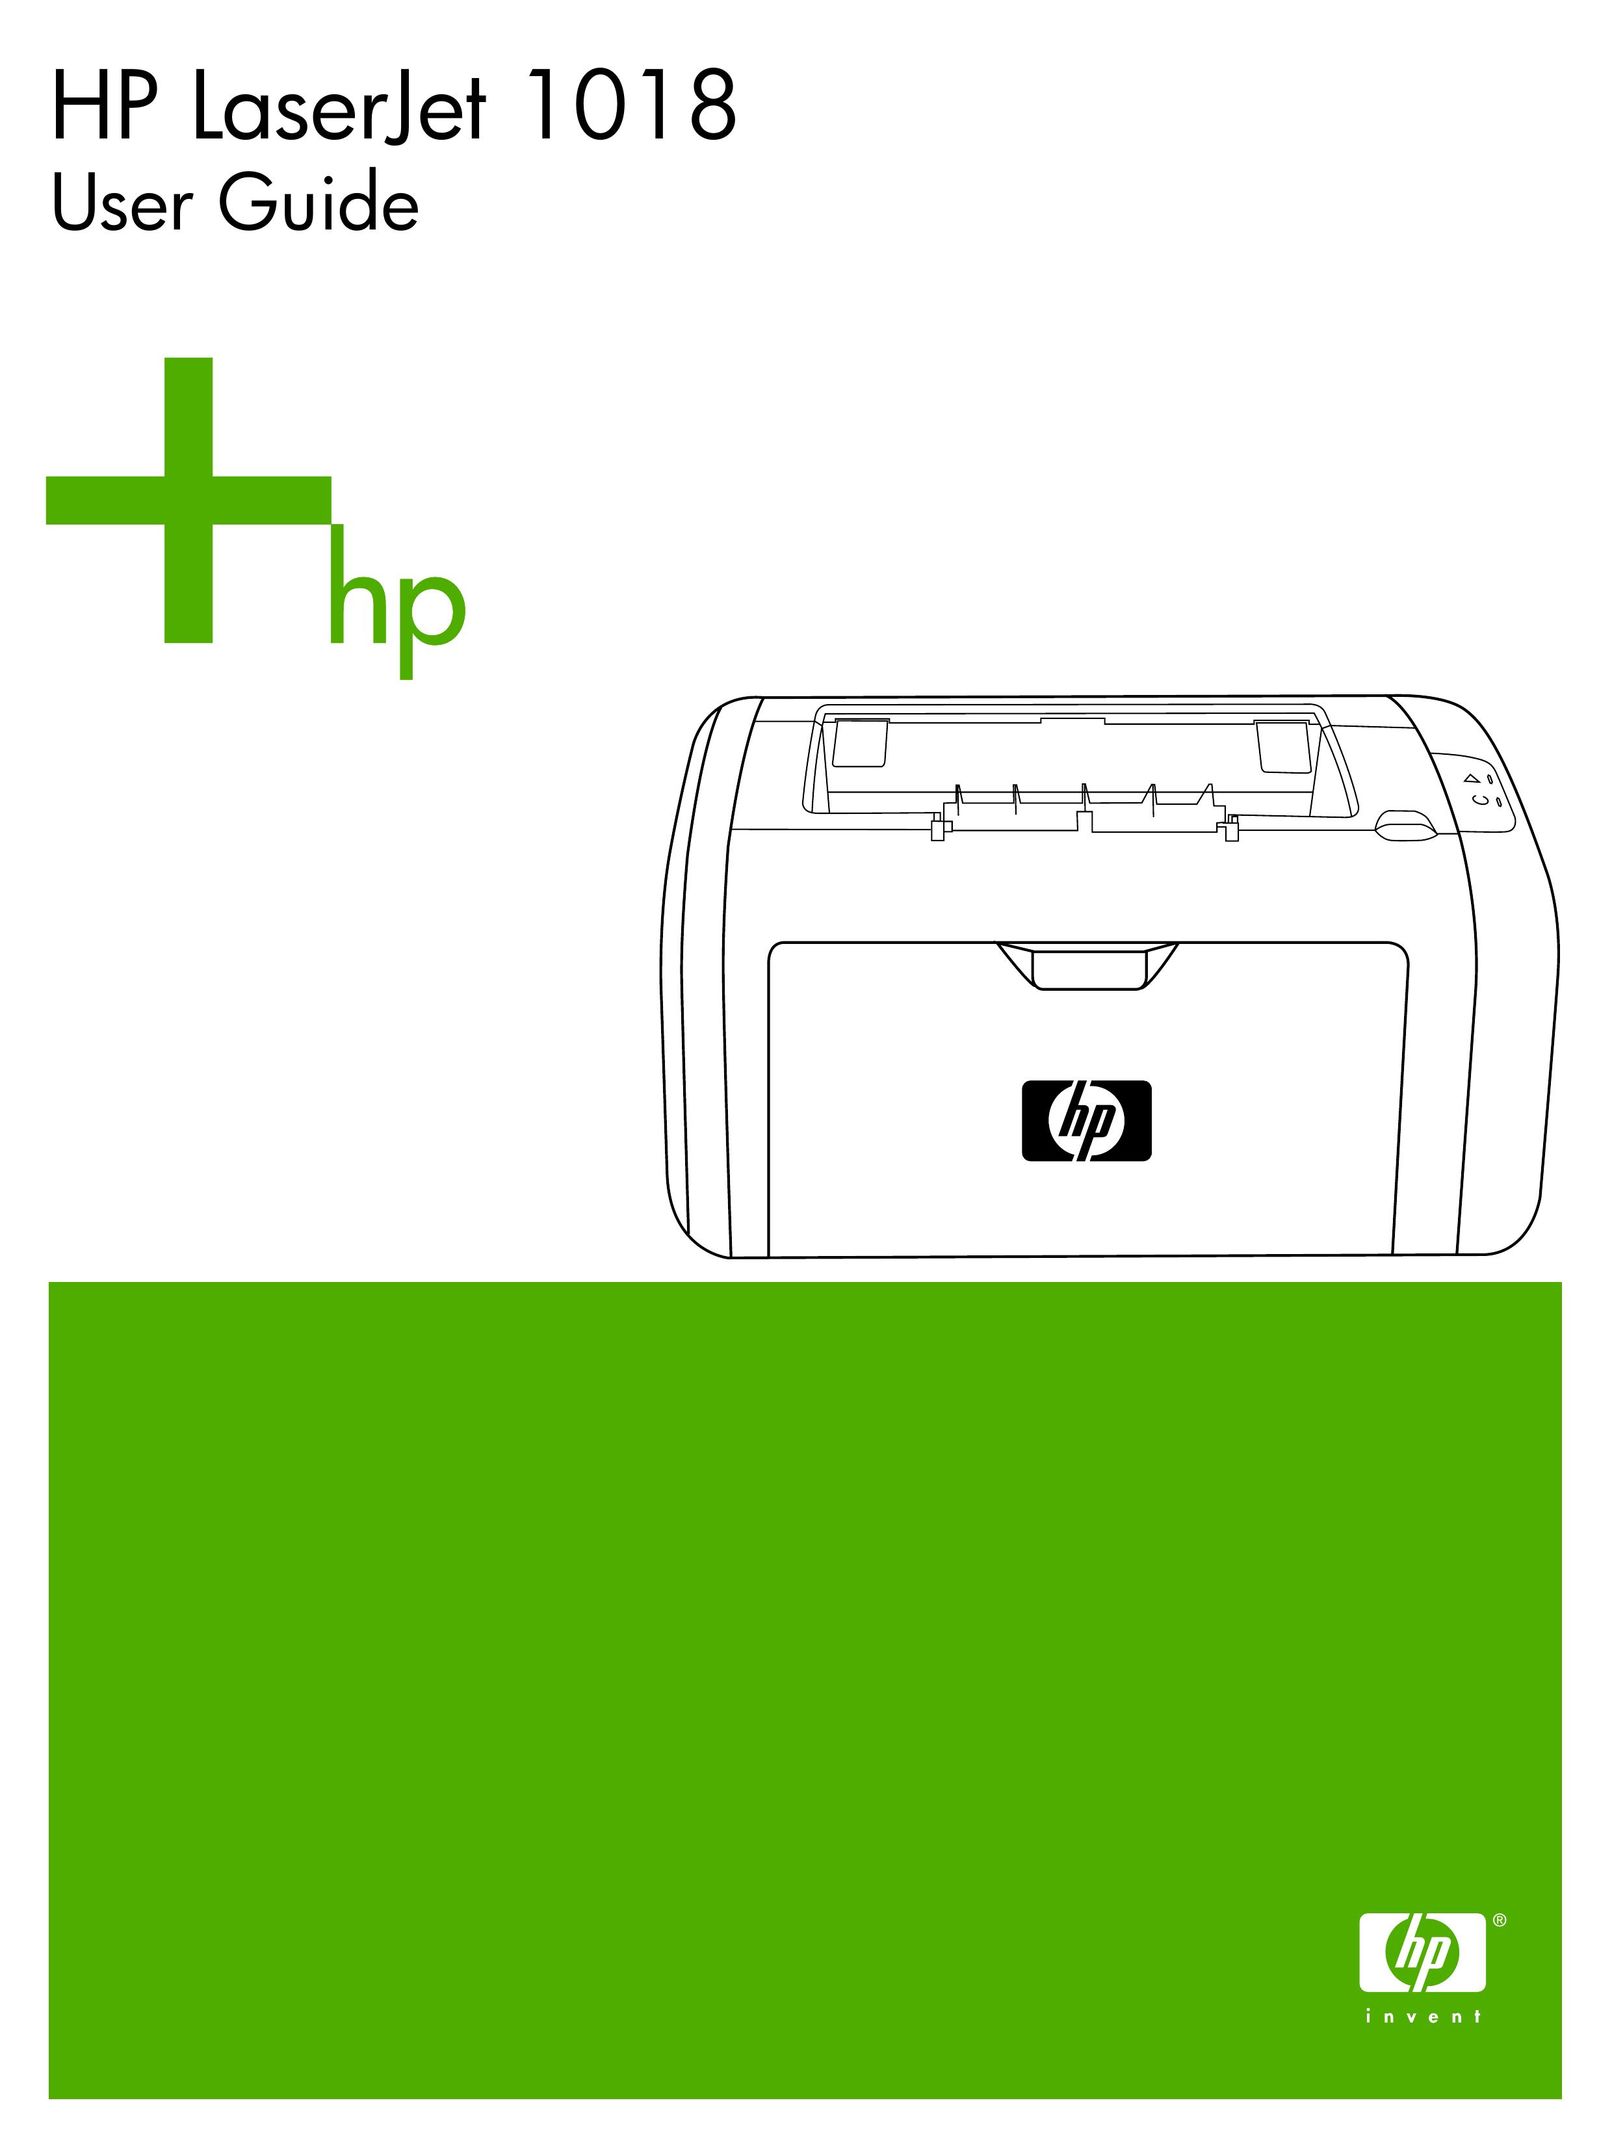 HP (Hewlett-Packard) 1018 Printer User Manual